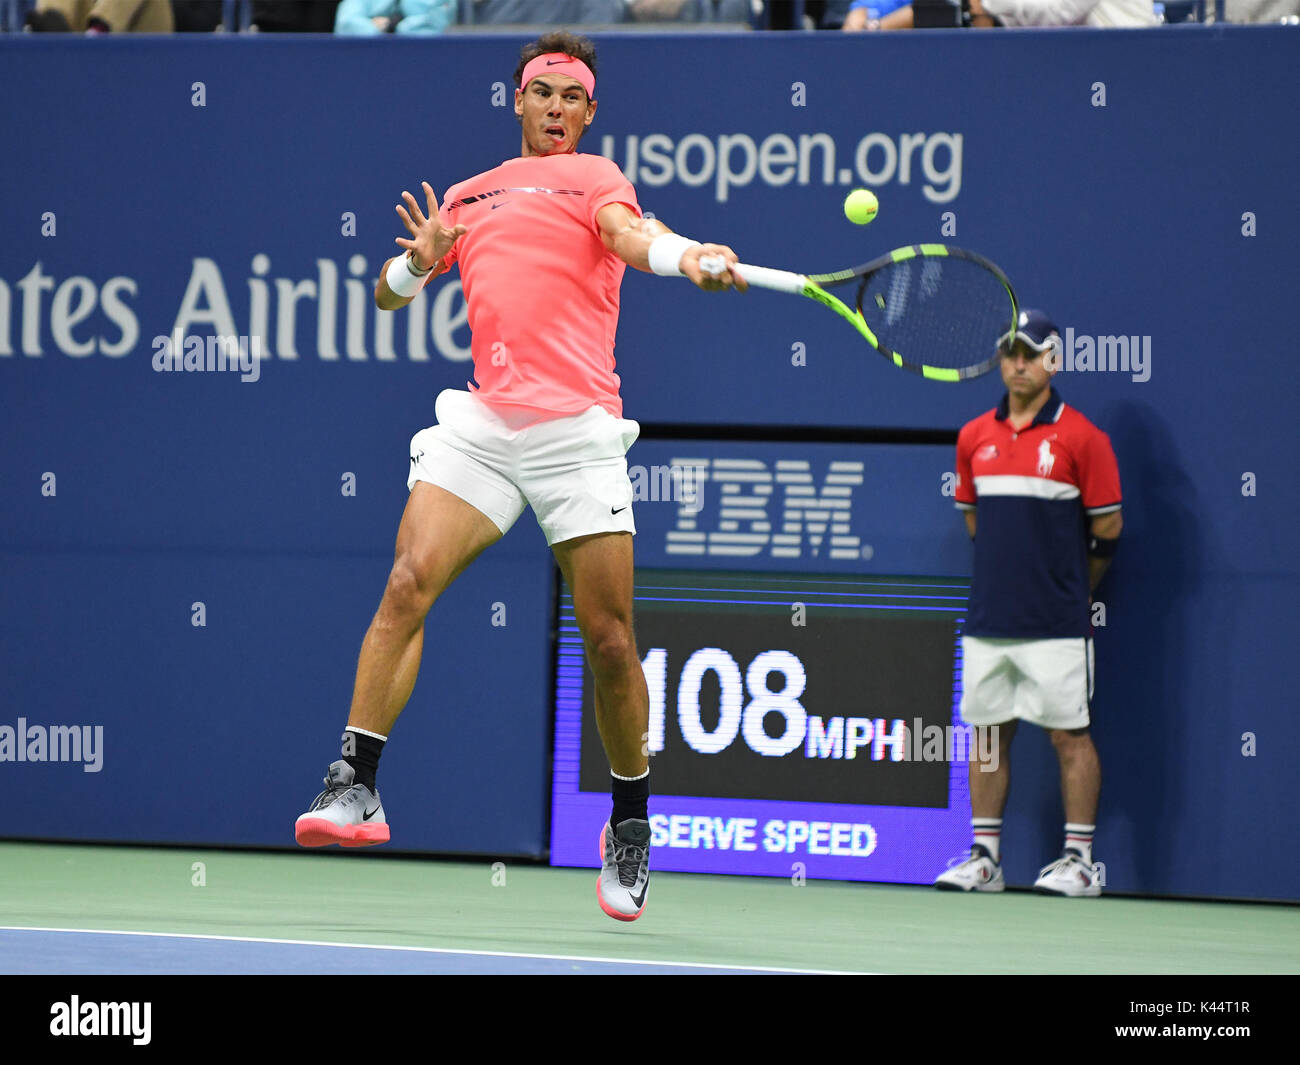 Il 2 settembre 2017, Billie Jean King National Tennis Center, Flushing Meadows, New York, Stati Uniti d'America; Rafael Nadal (ESP) in azione durante il suo terzo round corrisponde a US Open Foto Stock